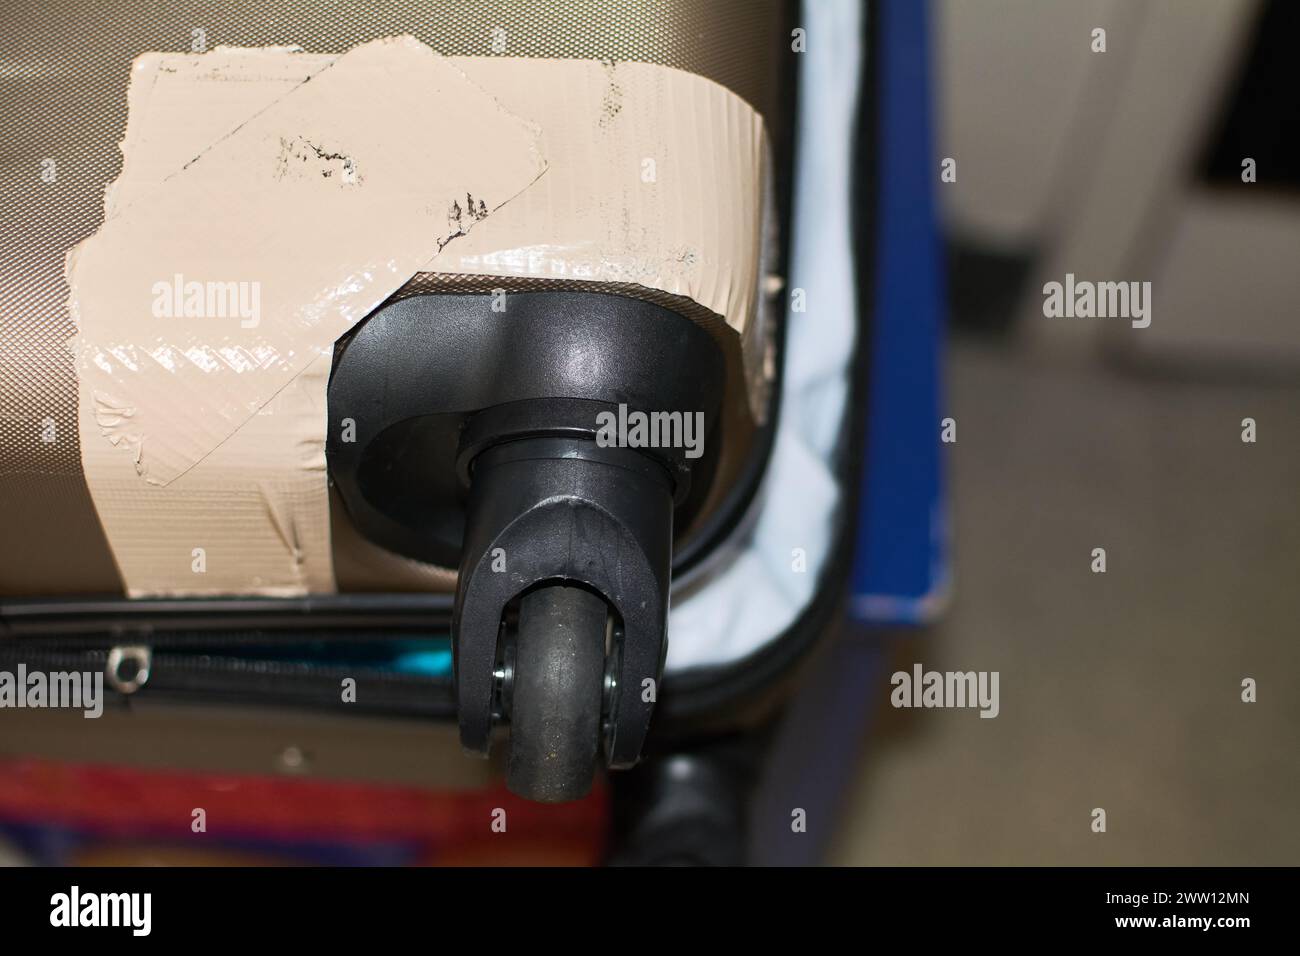 Valigetta con ruota e angolo riparati con nastro adesivo, che mostra una soluzione temporanea. Foto Stock